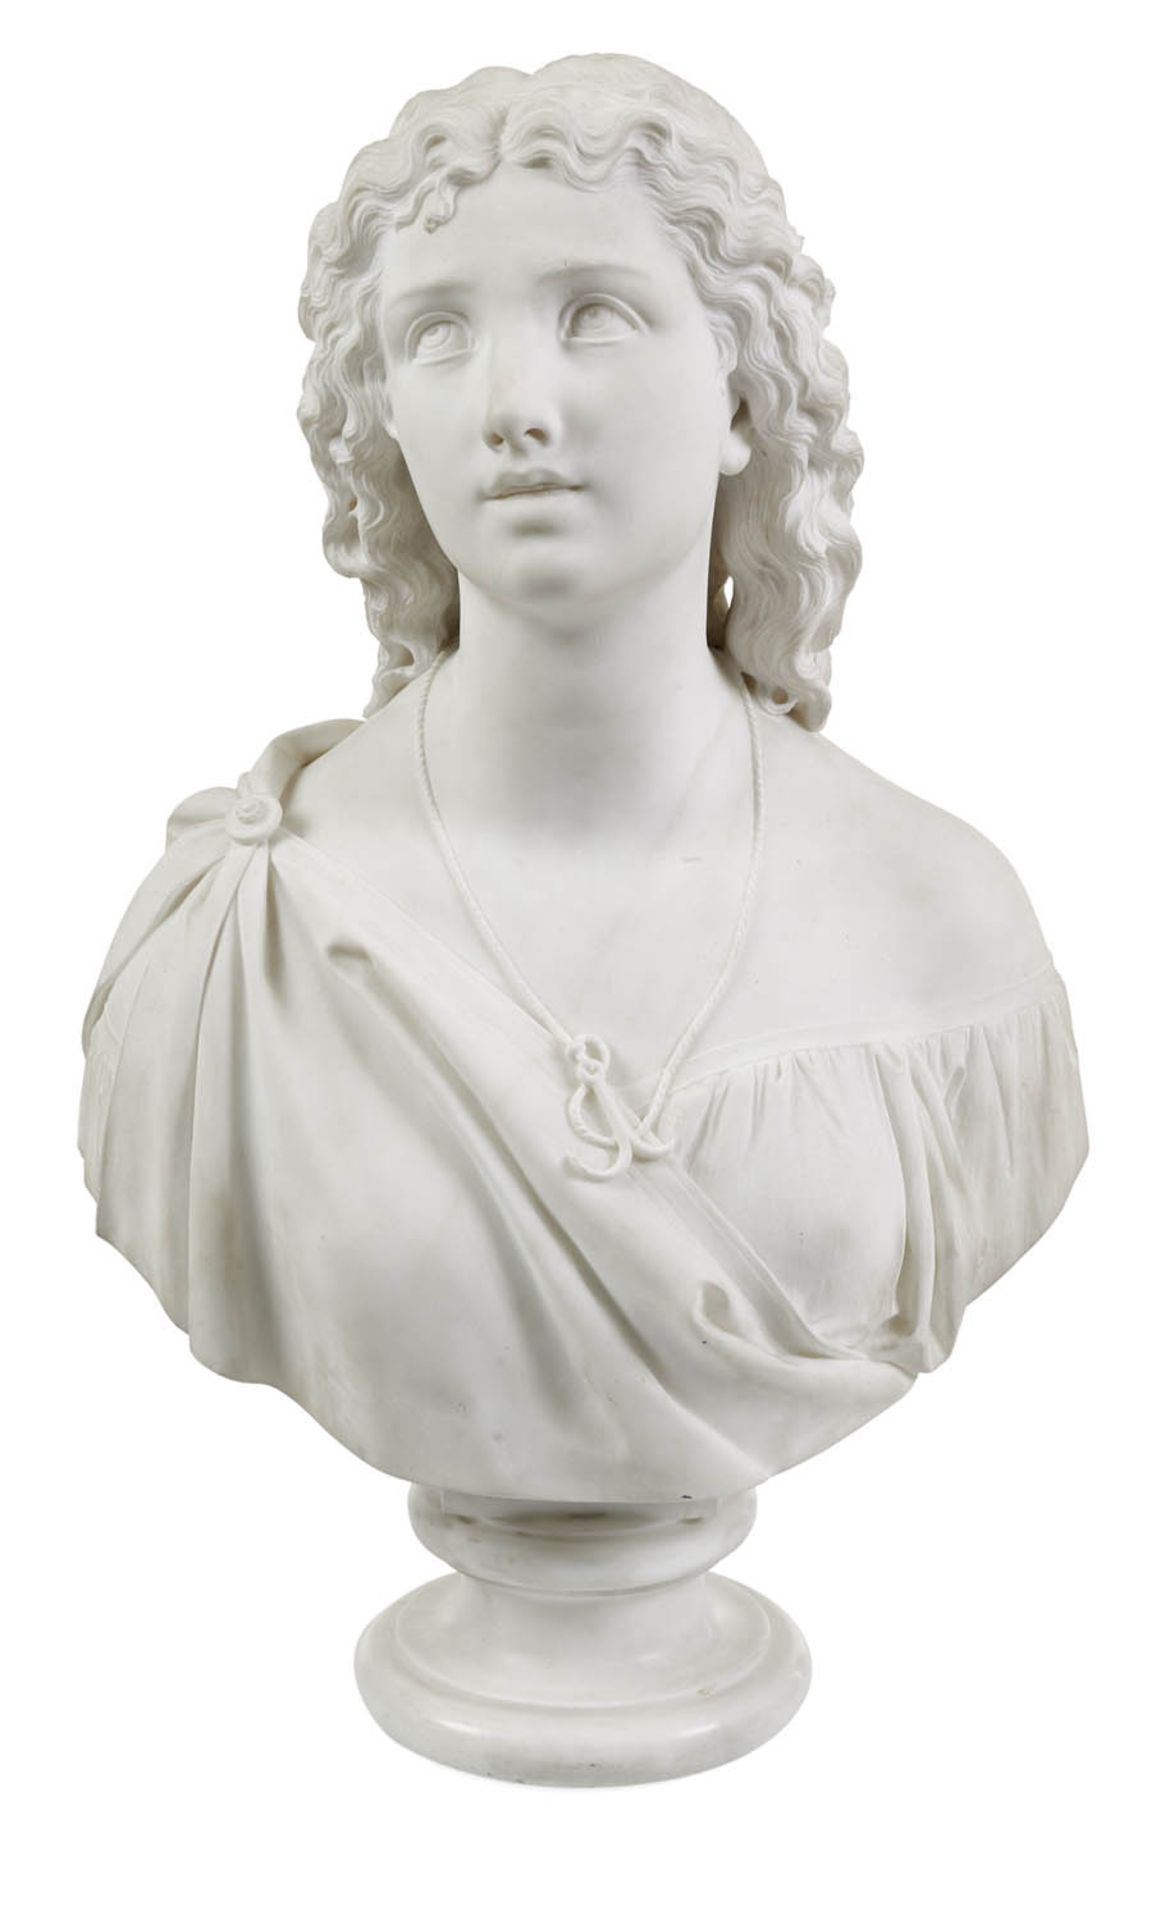 Argenti, GiosuéViaggiù-Varese 1819 - 1901H. 70 cmBüste einer jungen Frau mit Zöpfen und